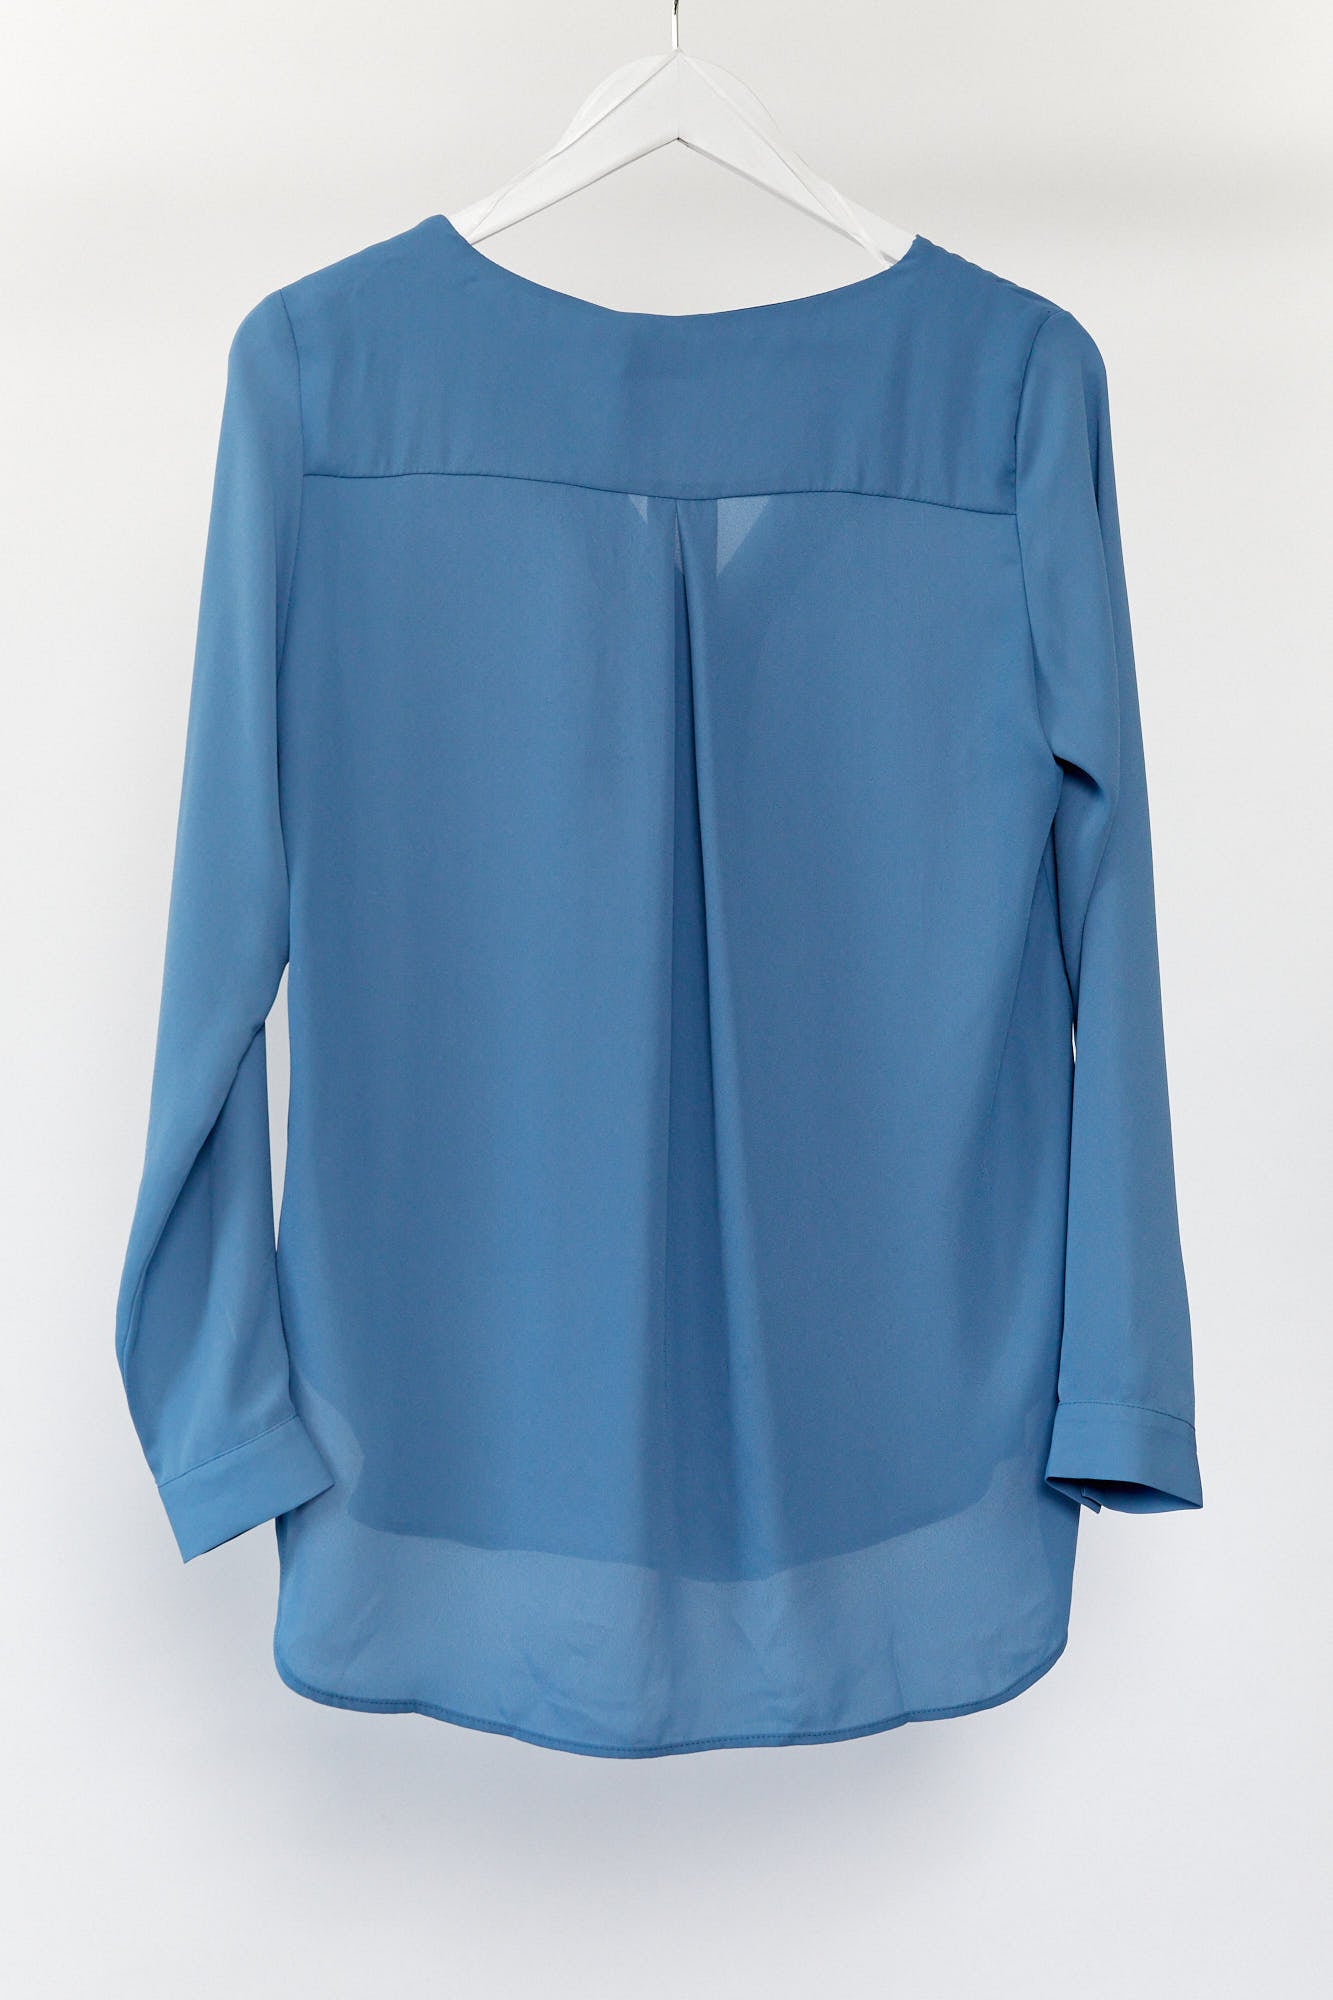 Womens Vila blue open neck blouse size 10